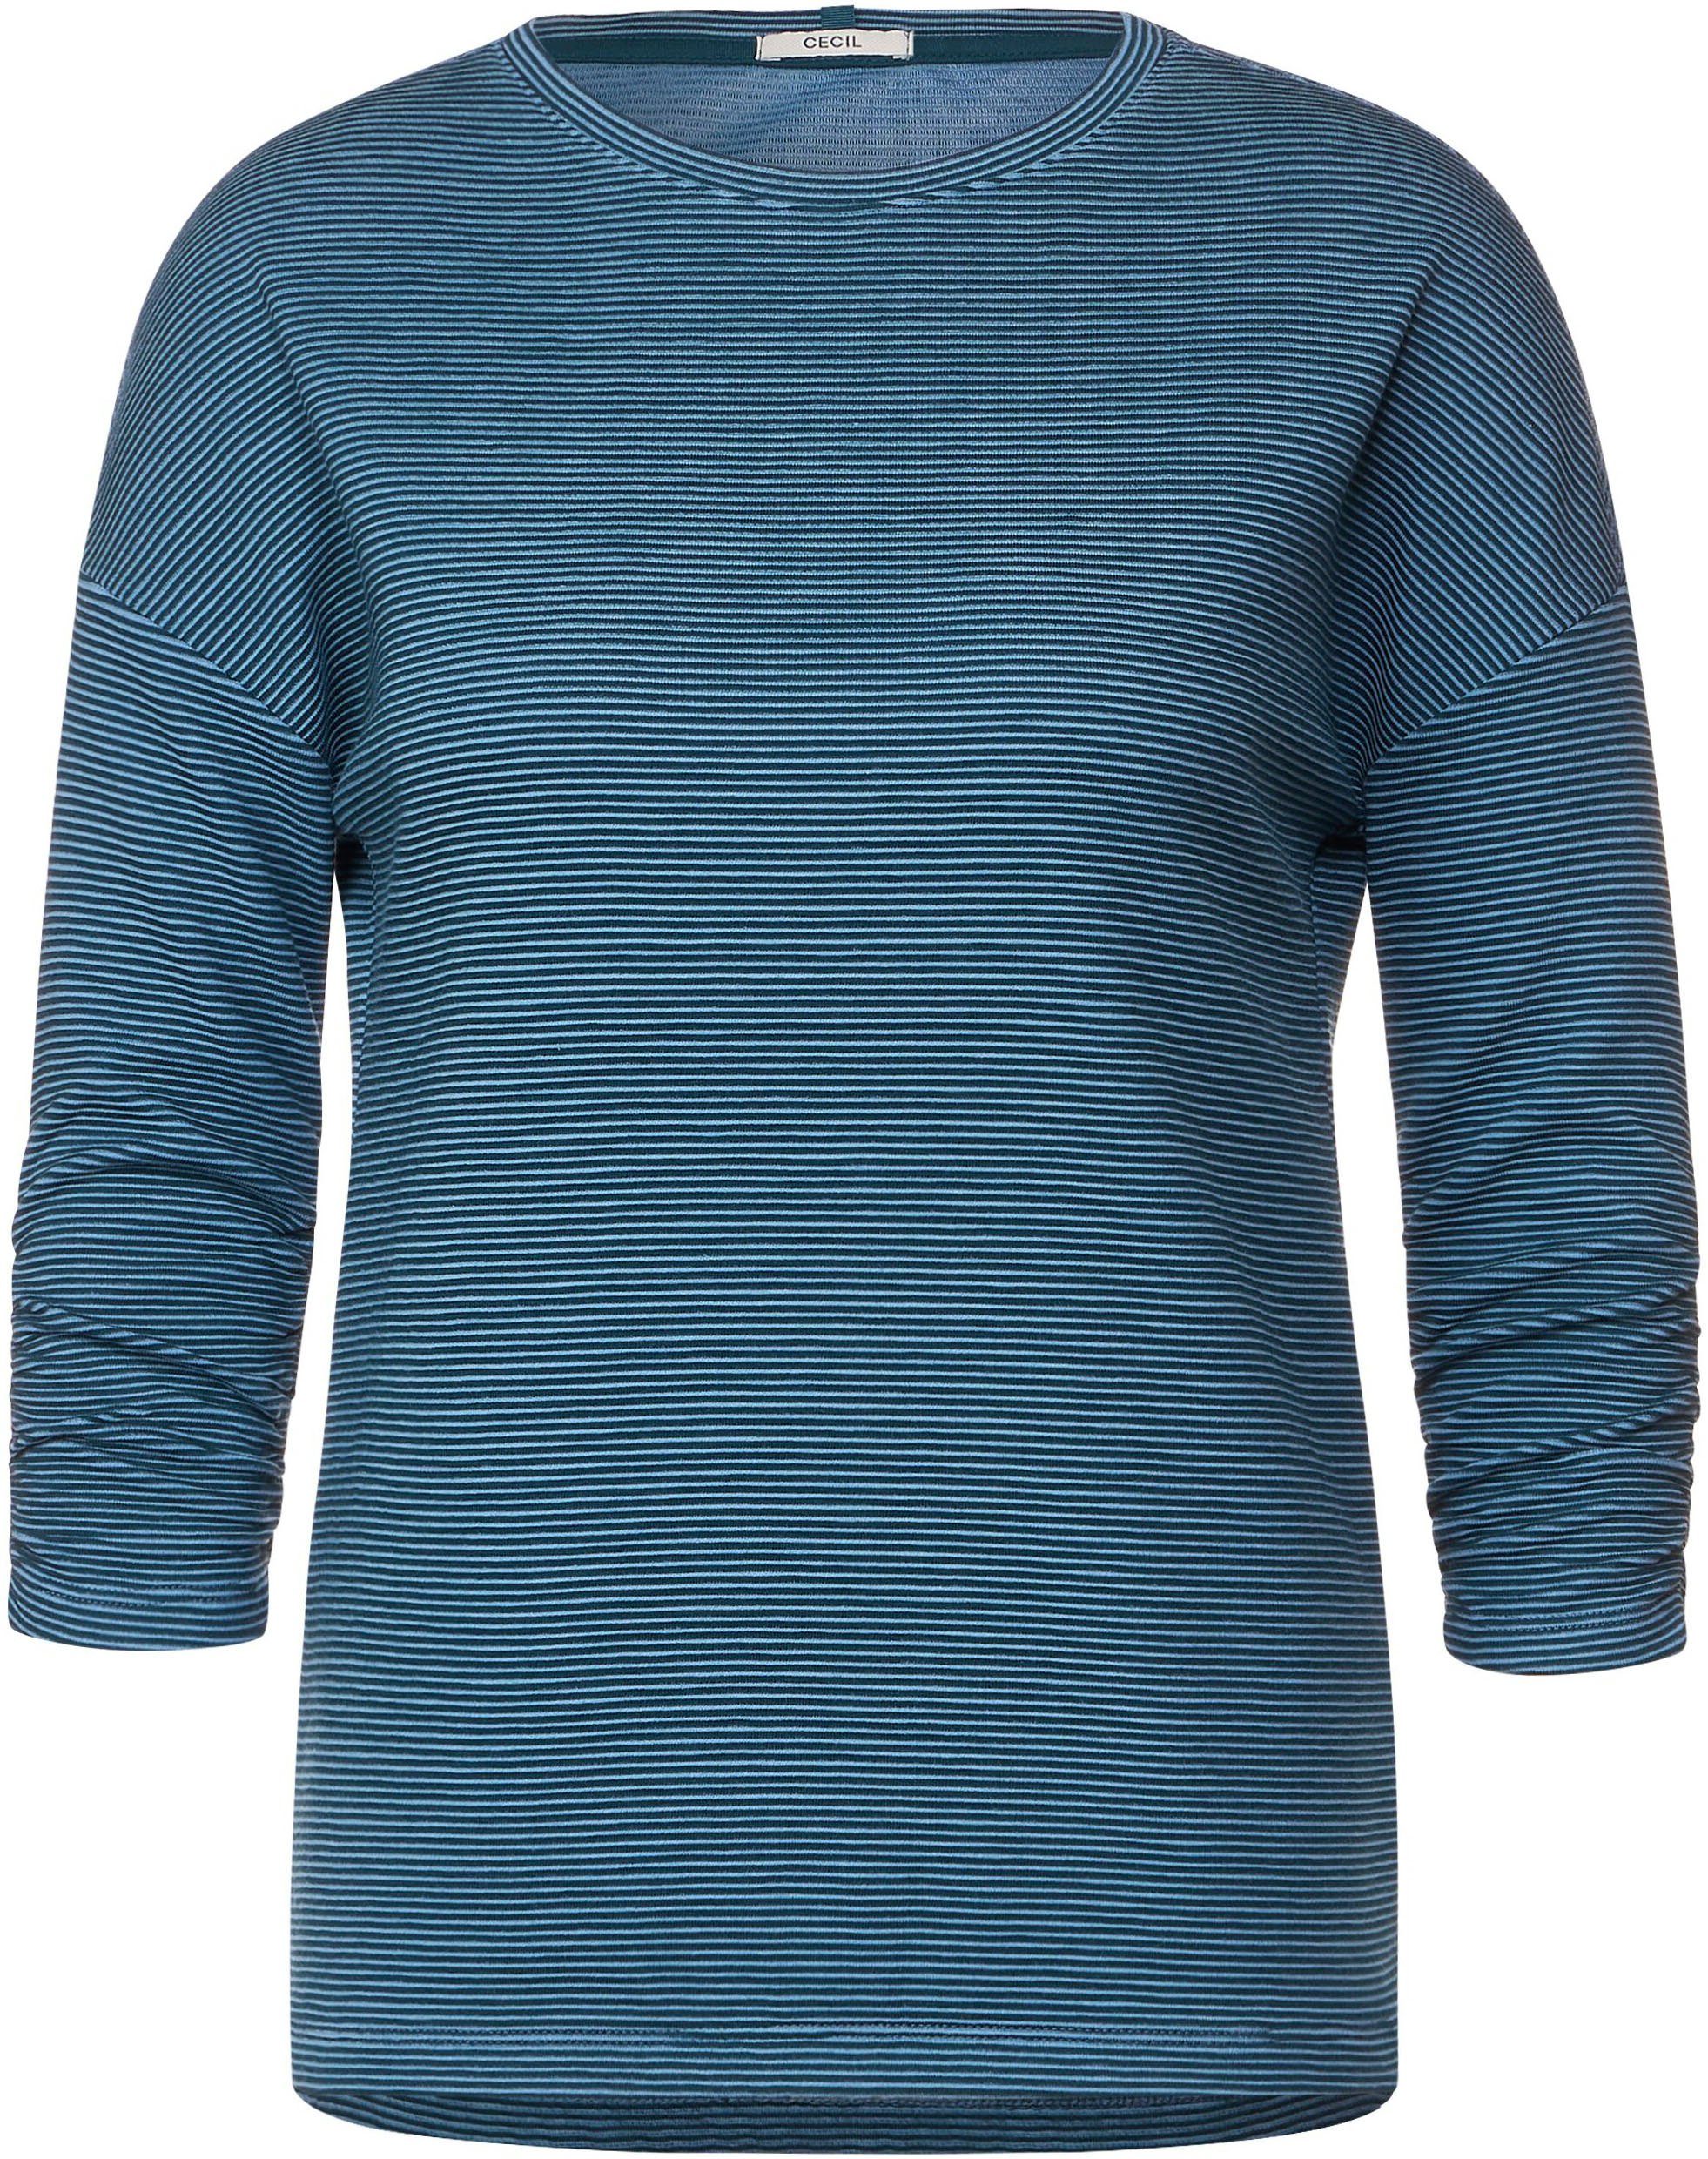 Schultern überschnittenen 3/4-Arm-Shirt blue leicht adriatic Cecil mit